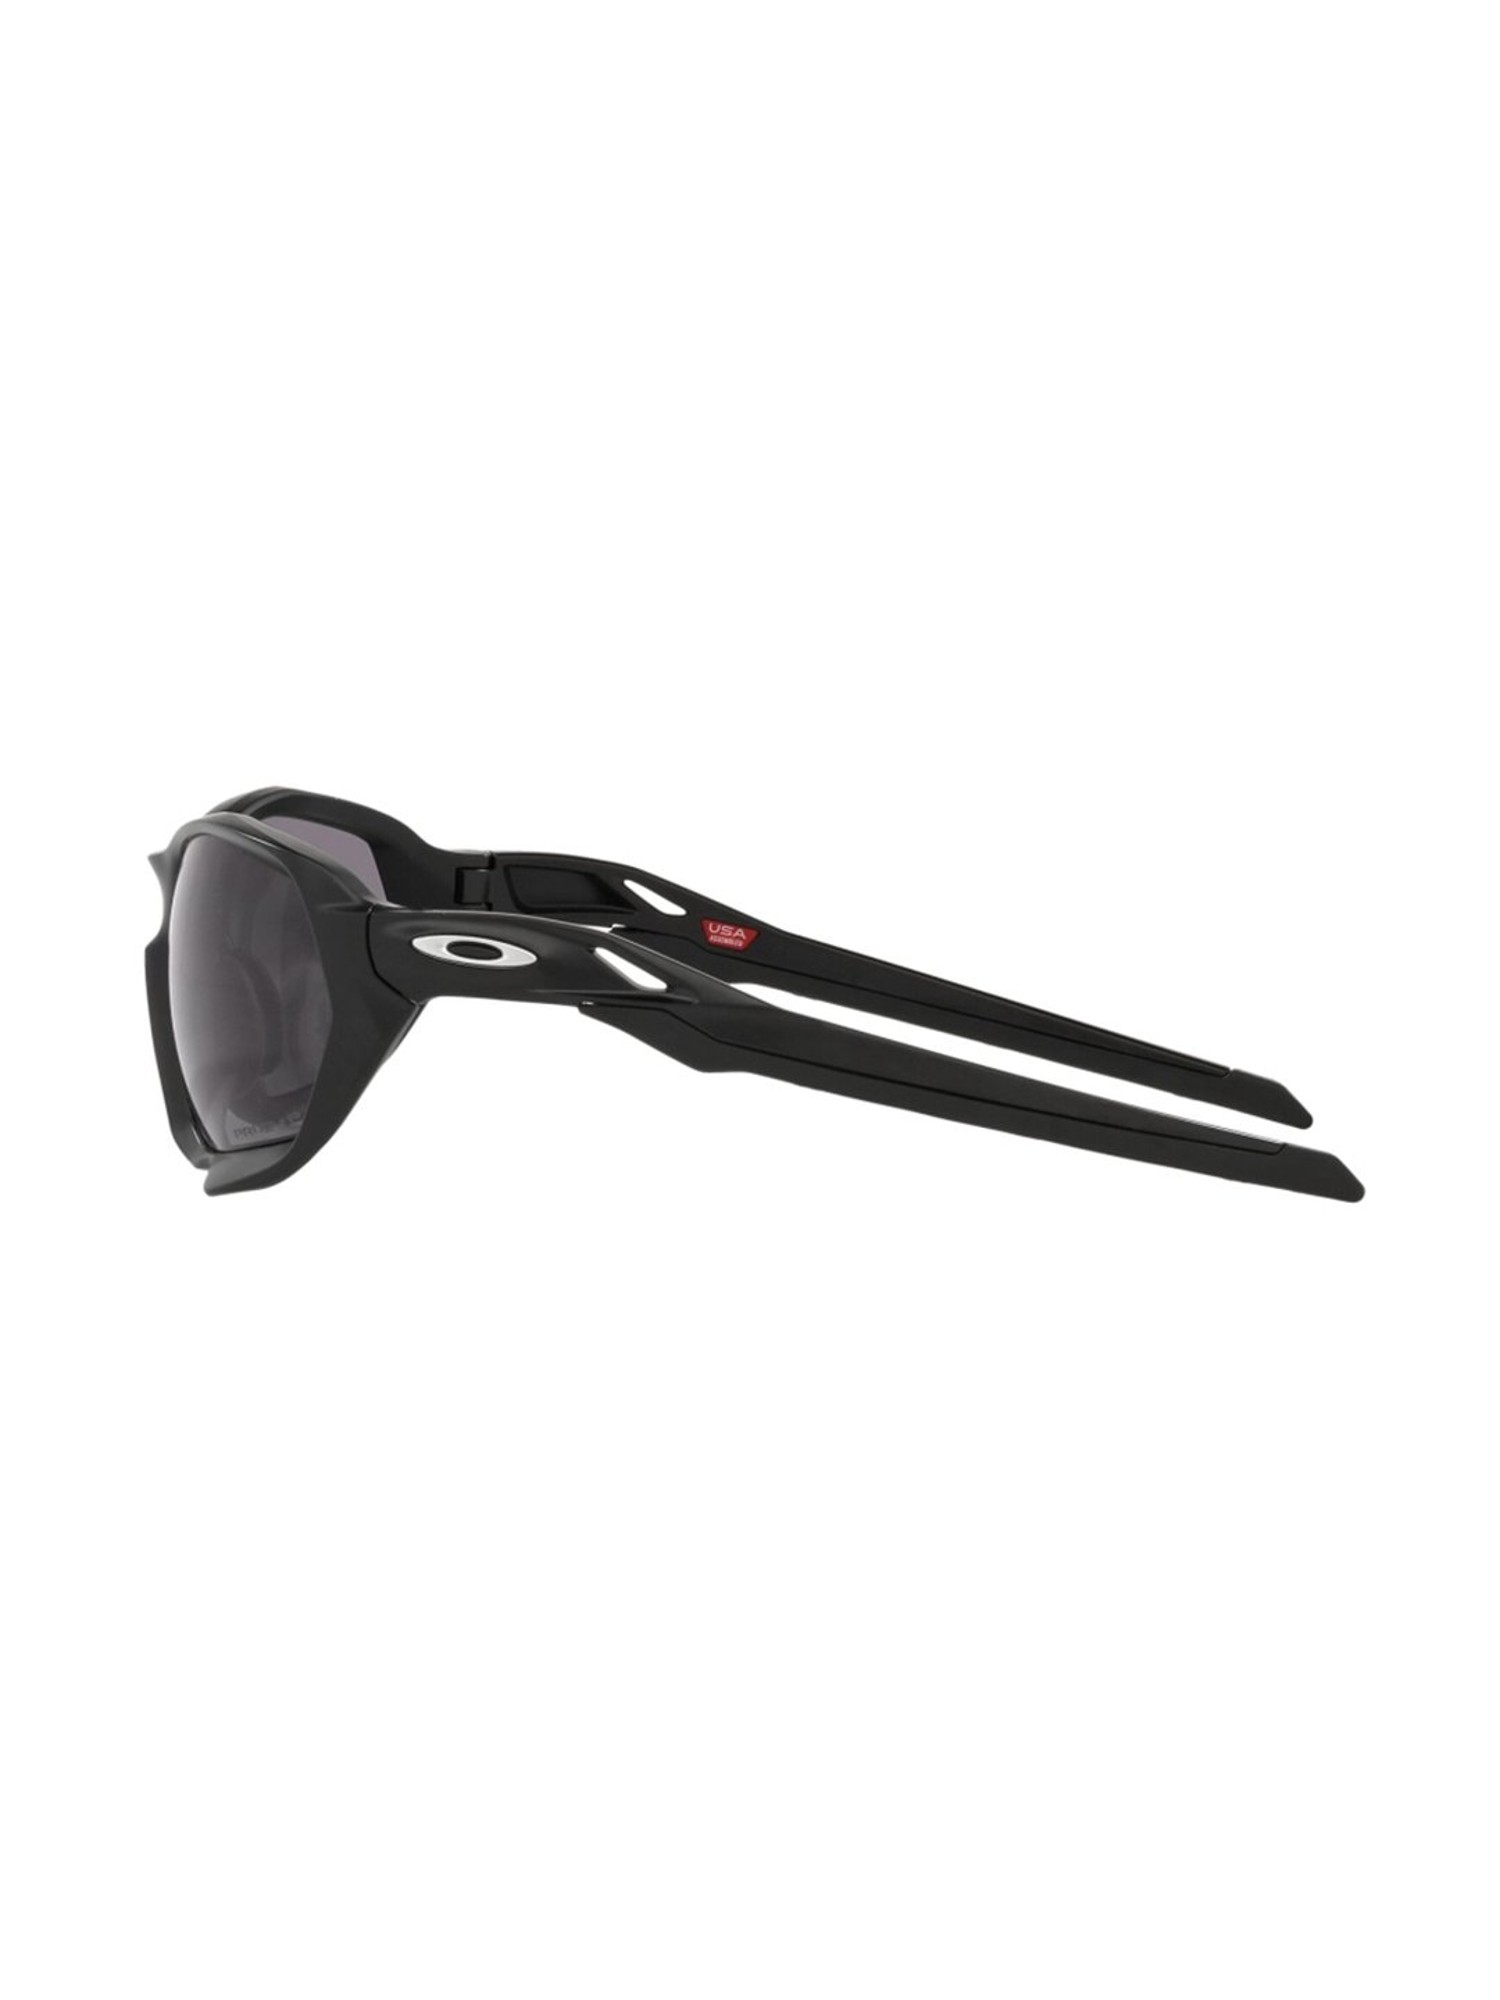 Buy Oakley 0OO9019 Light Grey Rectangular Sunglasses - 59 mm For 